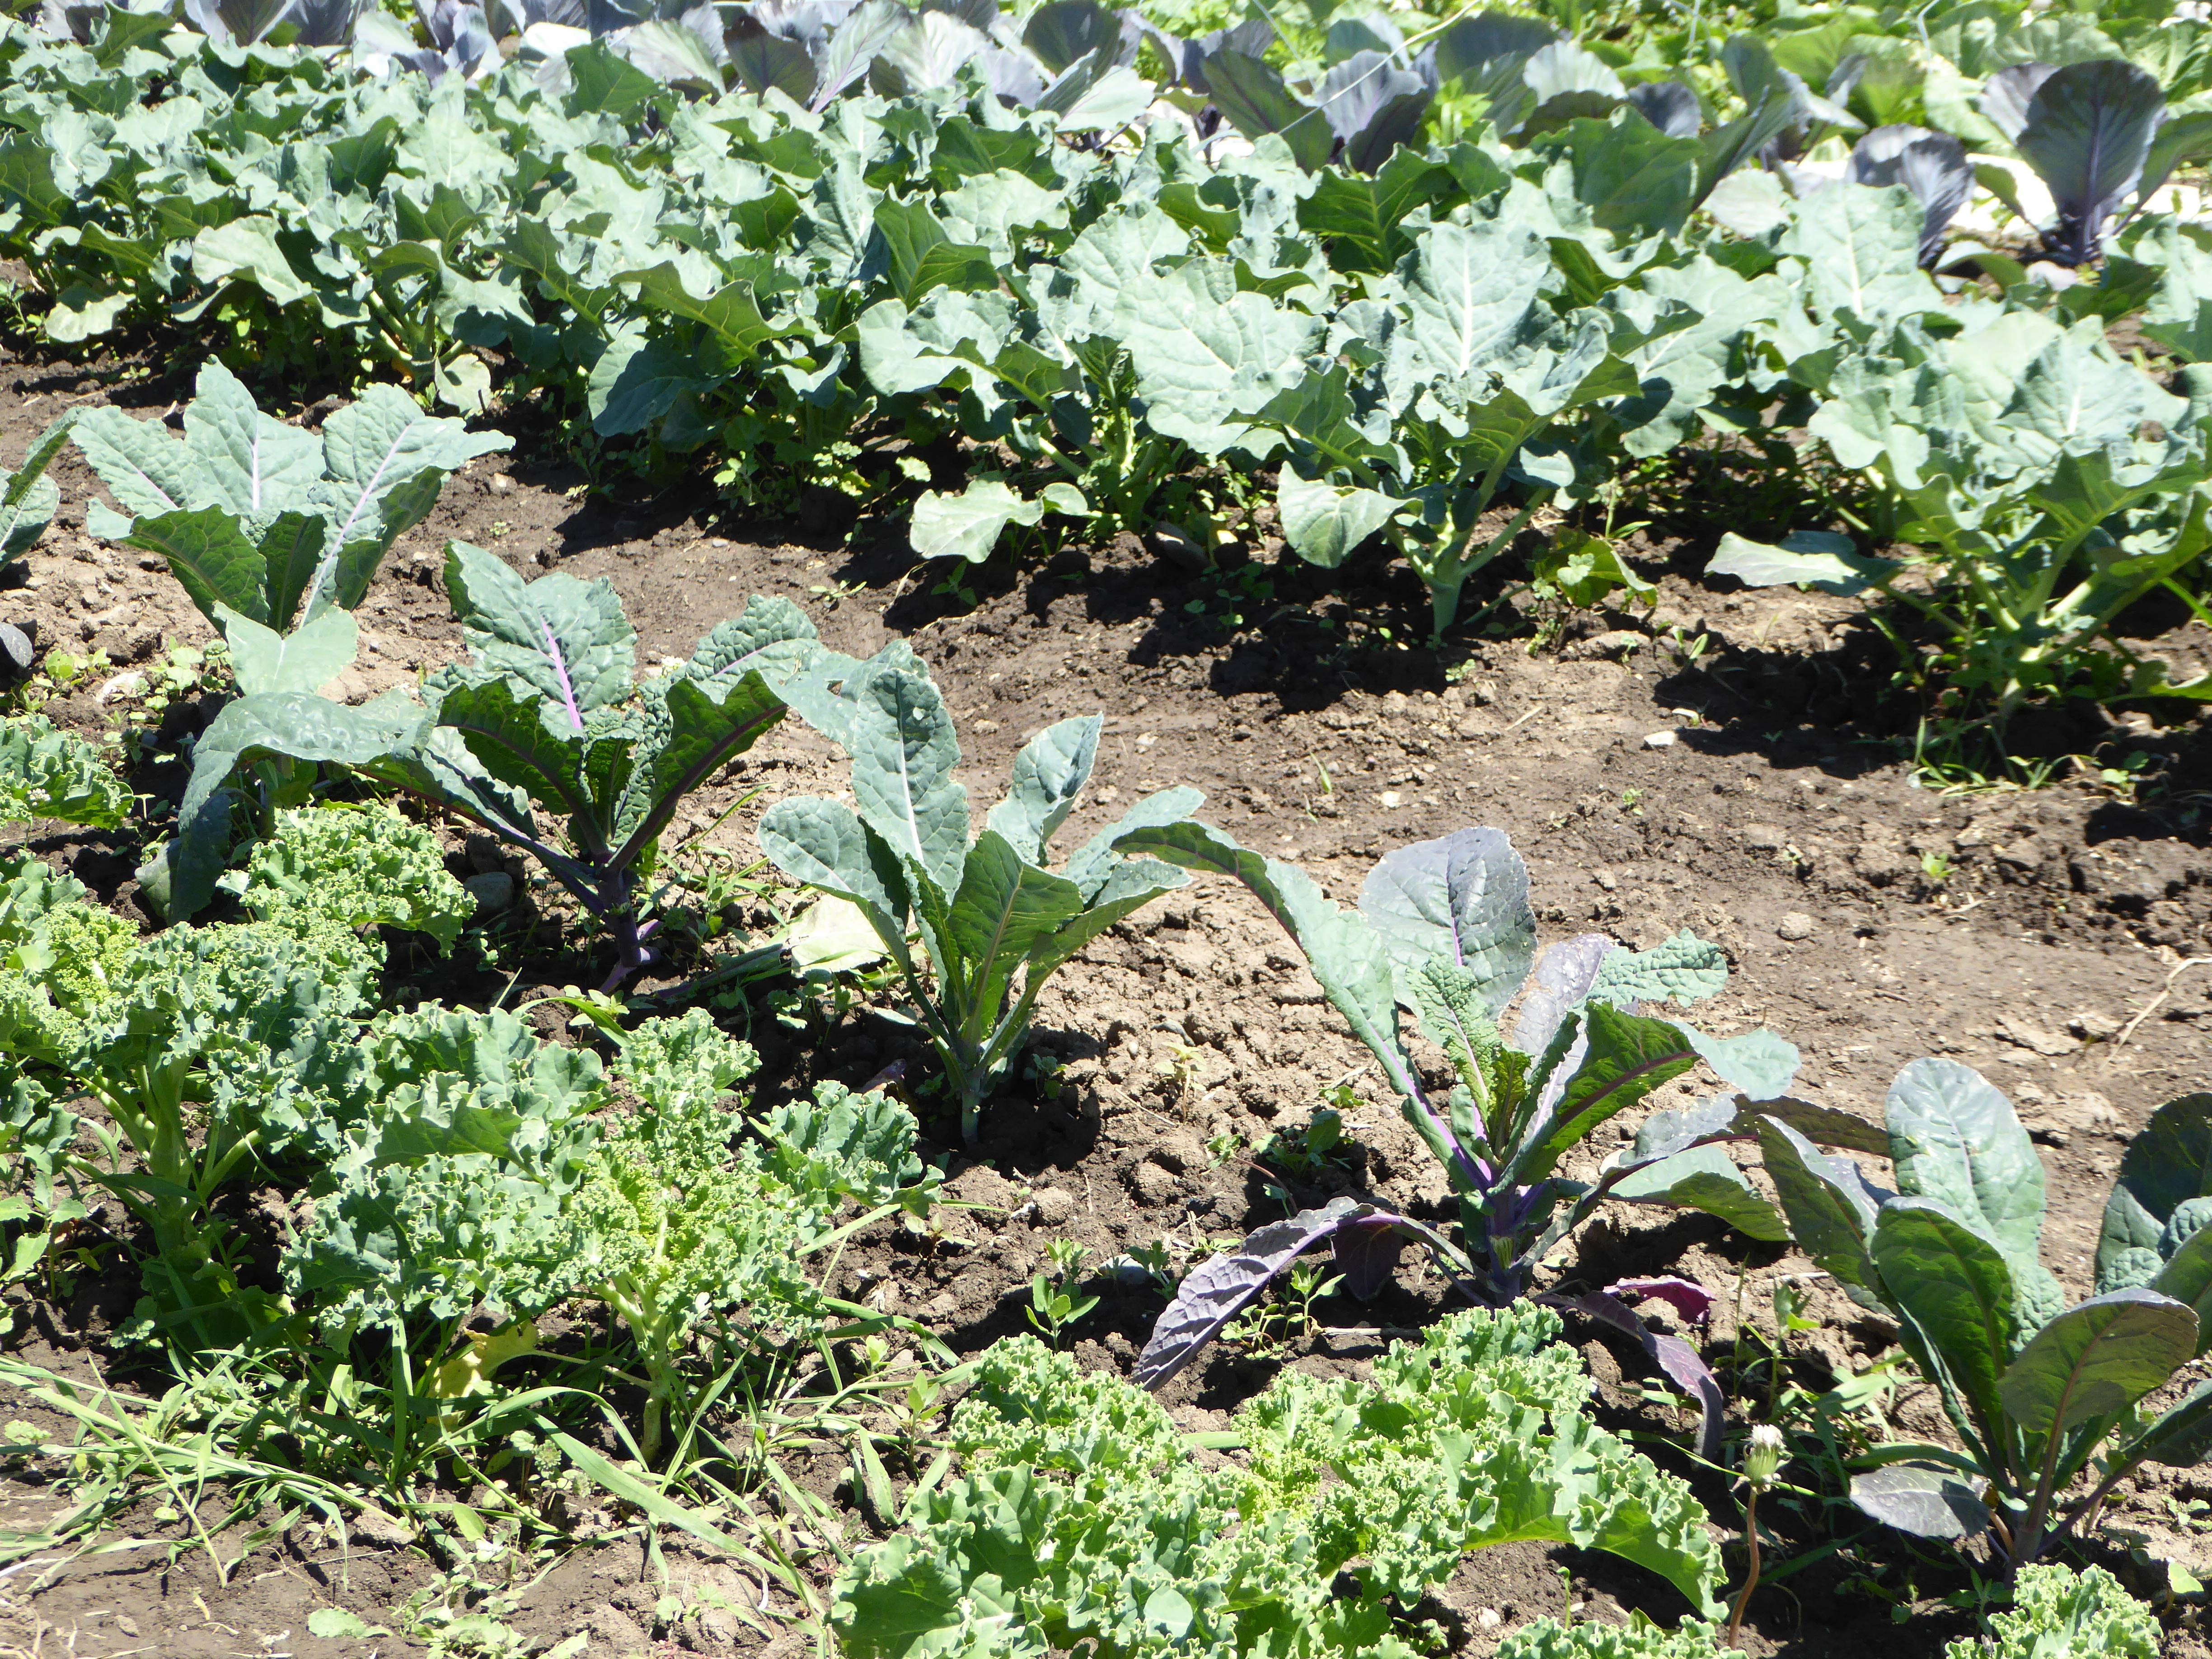 Rows of garden kale varieties